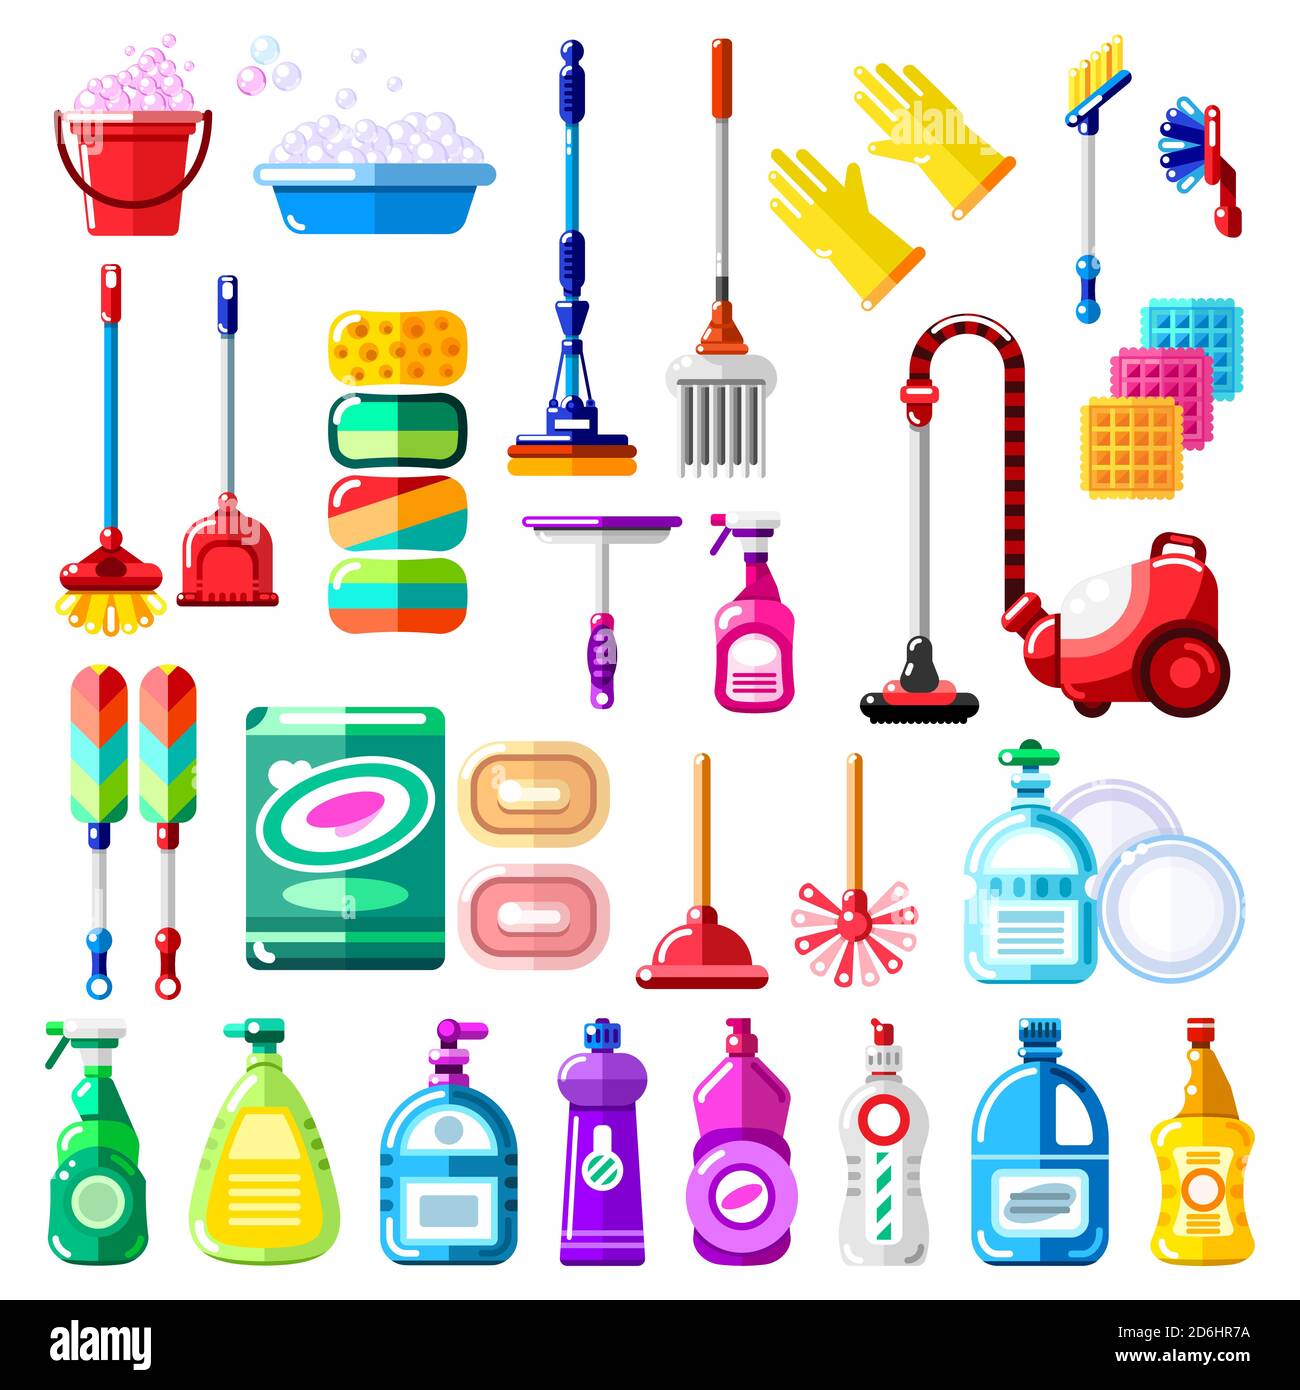 Outils de nettoyage, détergent et fournitures ménagers. Illustration  vectorielle d'un balai multicolore, d'un aspirateur, d'une brosse, d'une  éponge, d'un balai. Nettoyage de la maison et de la maison Image  Vectorielle Stock -